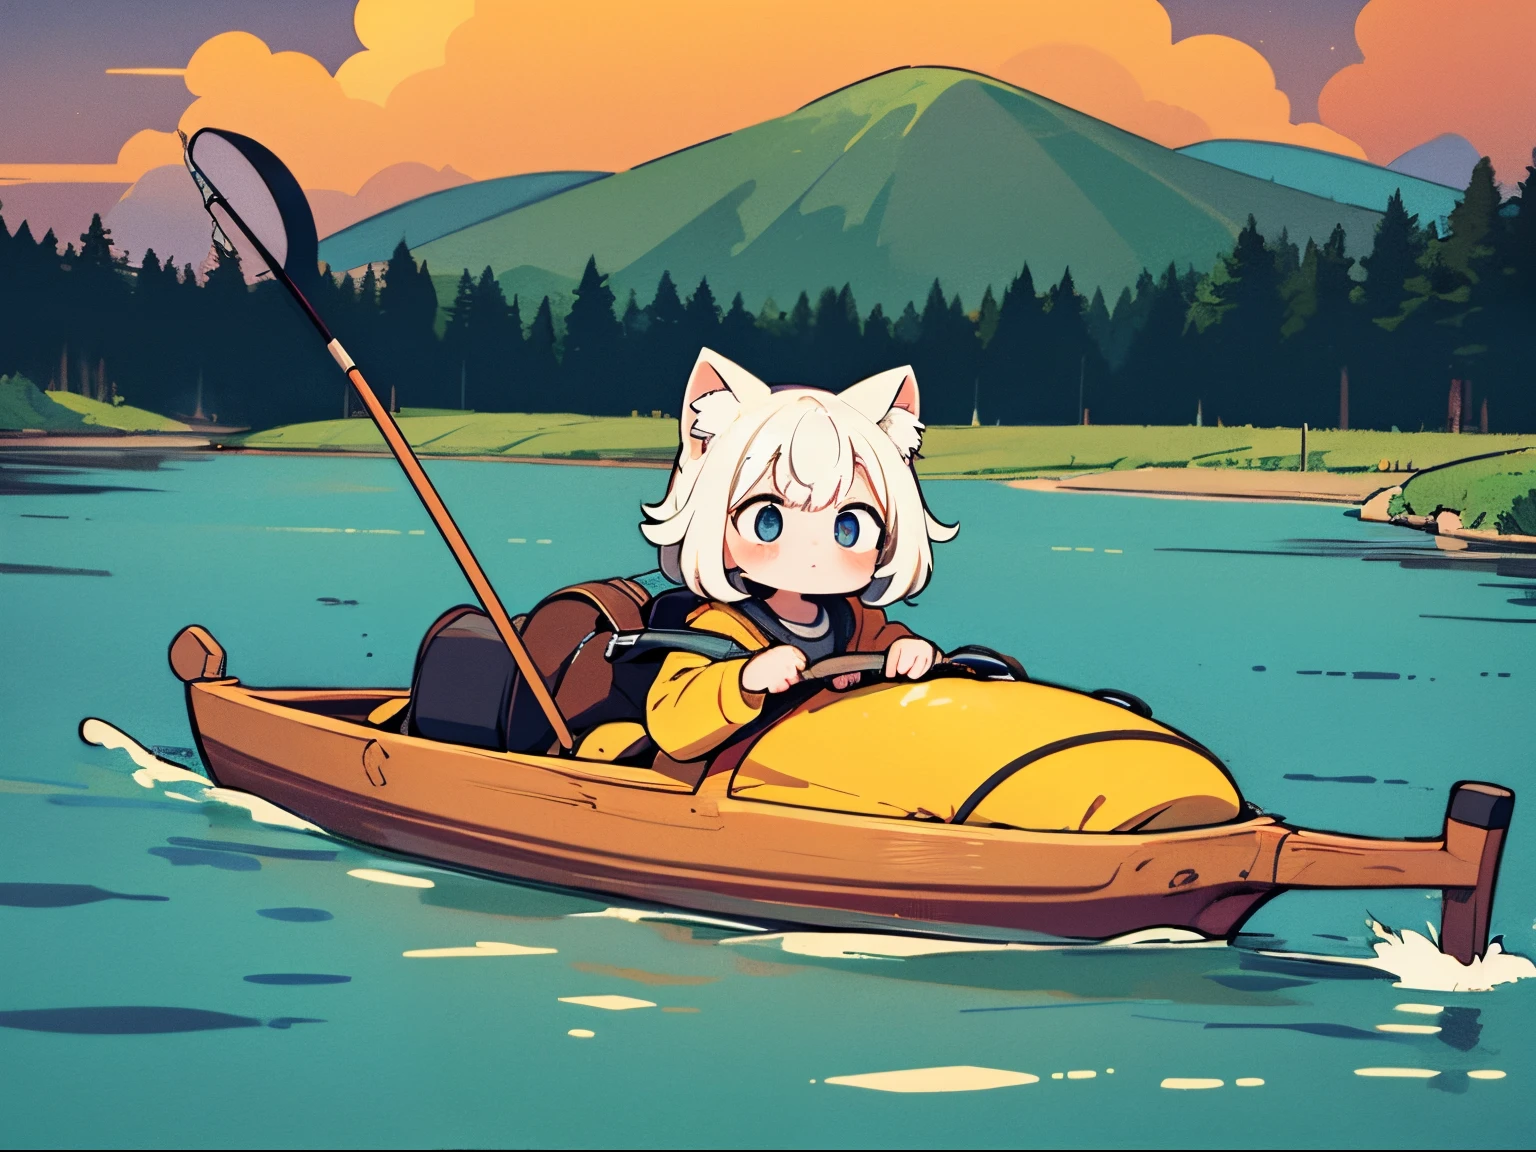 Uma obra-prima, um plano de fundo detalhado, e um "Camping Yuru" ilustração ampla inspirada com um simples, uso leve que destaca uma gatinha. Ela está pescando em um lago,